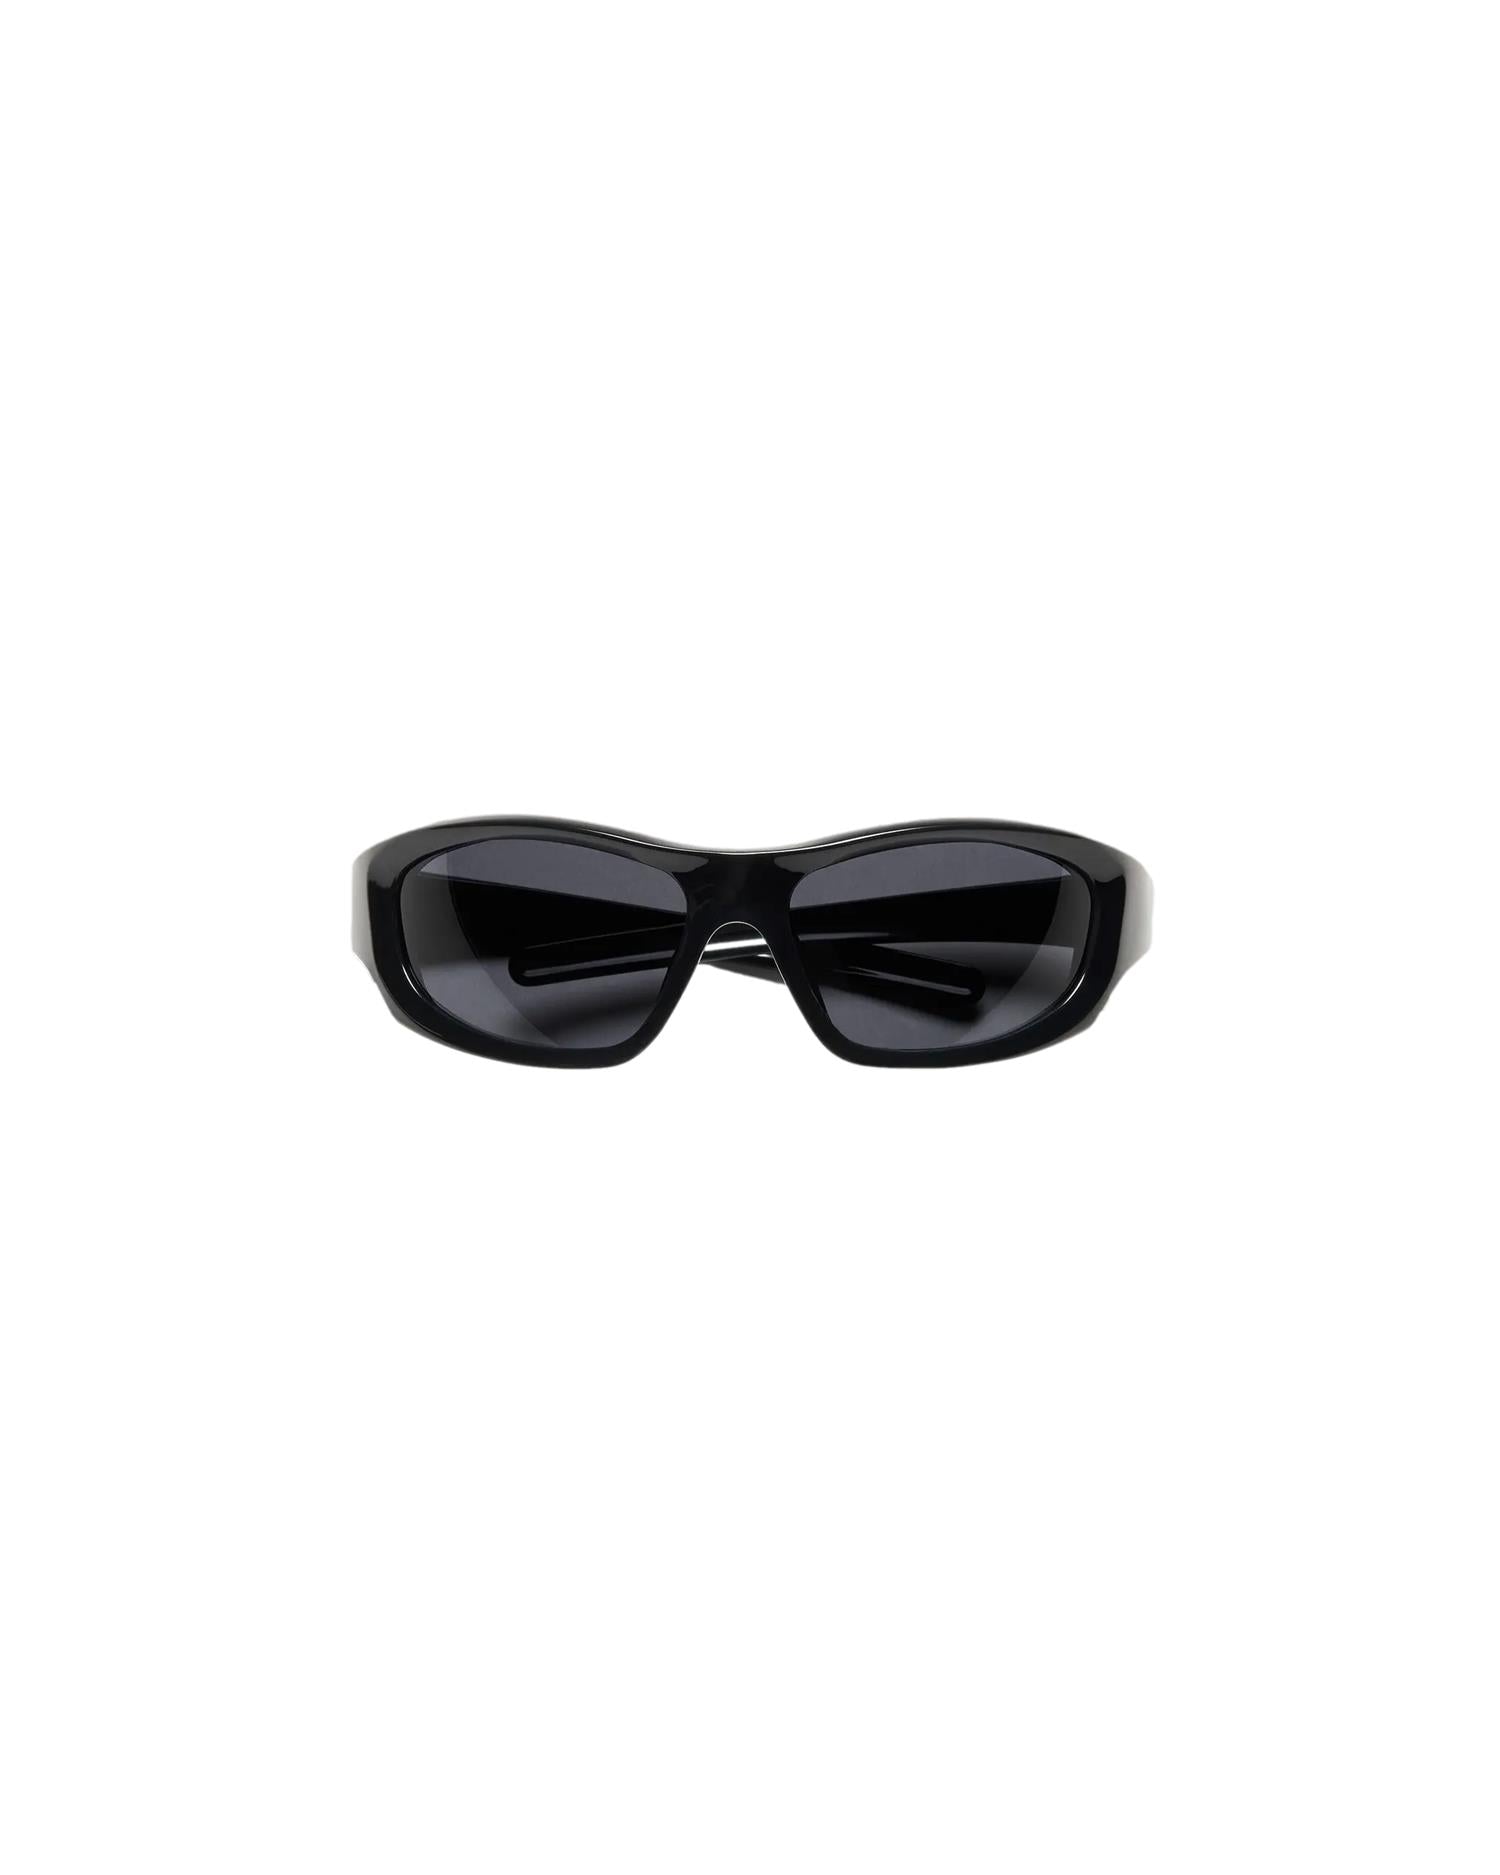 Shop Chimi Eyewear Flash Black Solbriller Sort her - Norsk, rask levering ikkebutikk.no